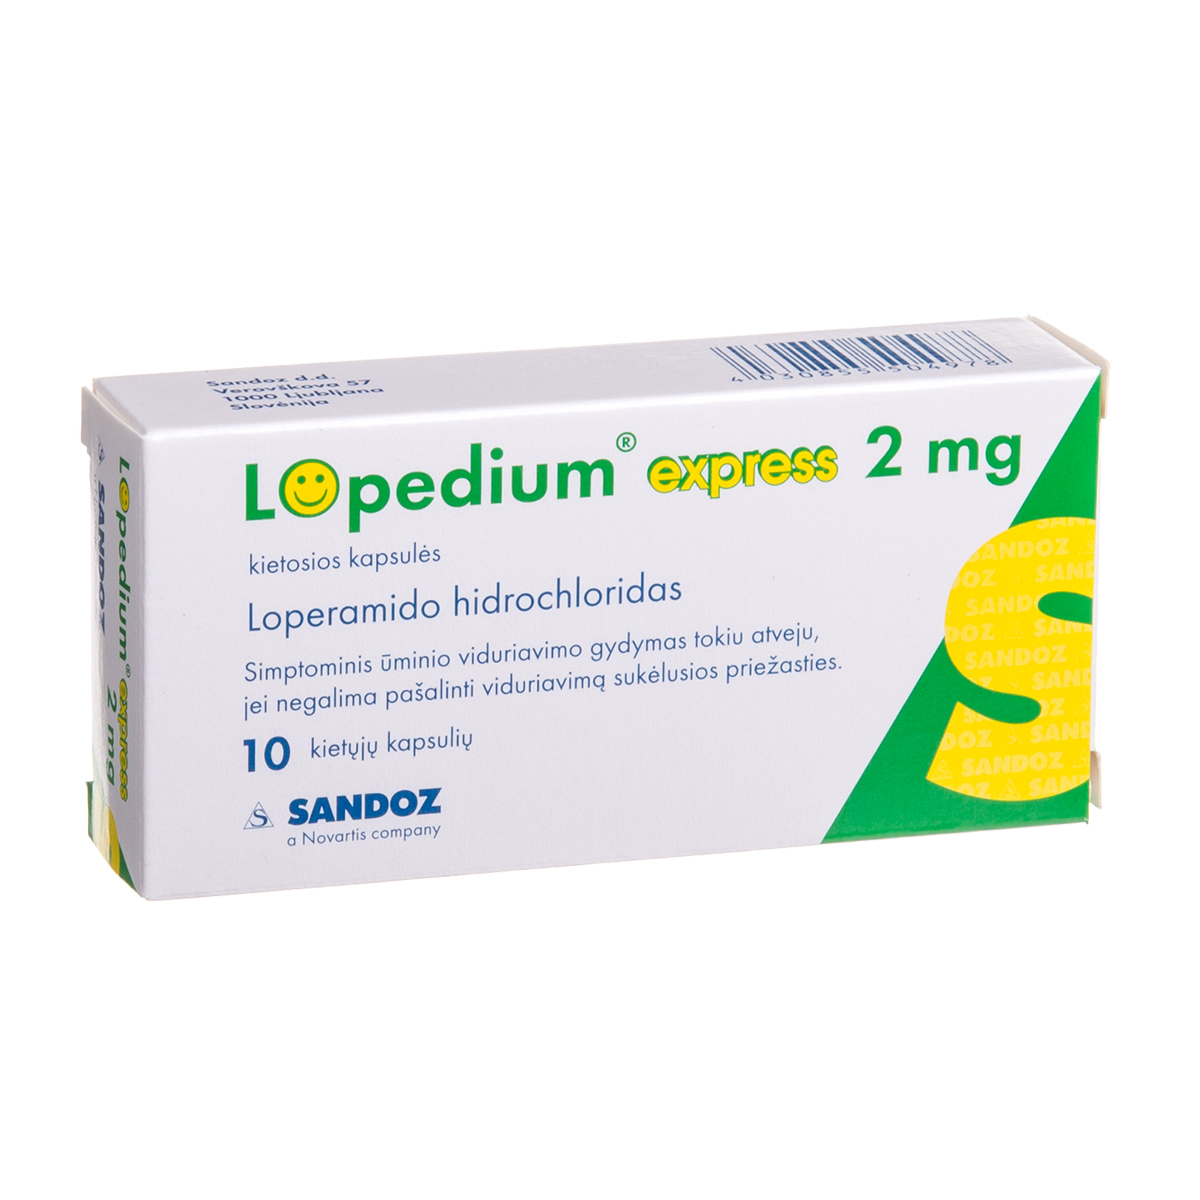 LOPEDIUM EXPRESS, 2 mg, kietosios kapsulės, N10